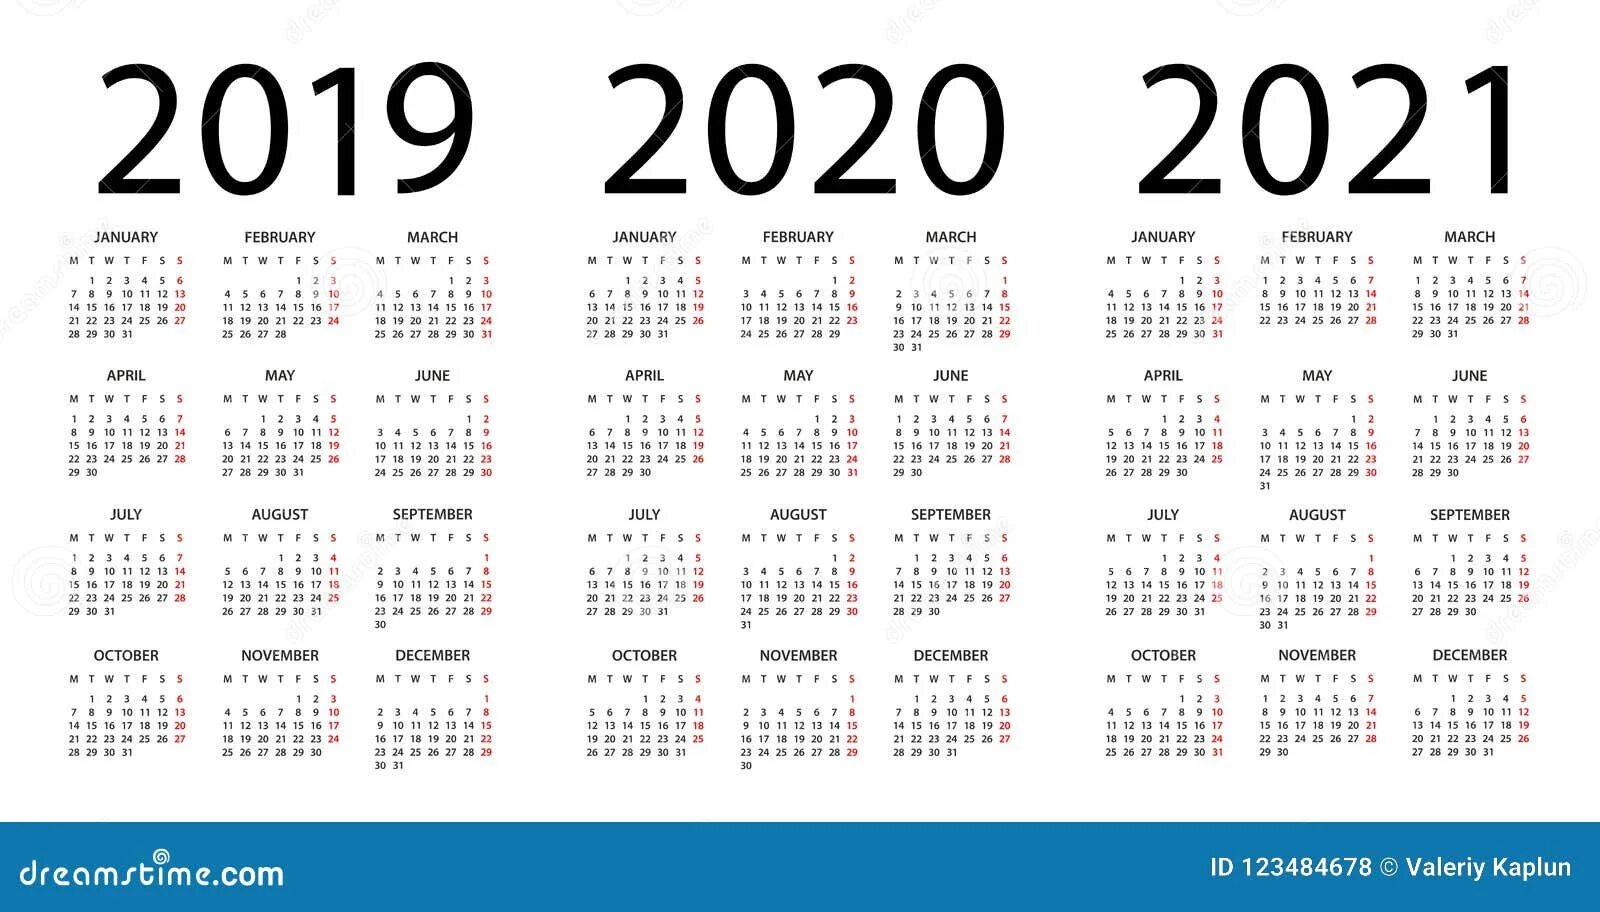 Календарь 2019 2020 2021. Календарь 2019 2020 2021 года. Календарь 2019-2020. Календарь 2019-2021 год. Календарь 2020 2021 год